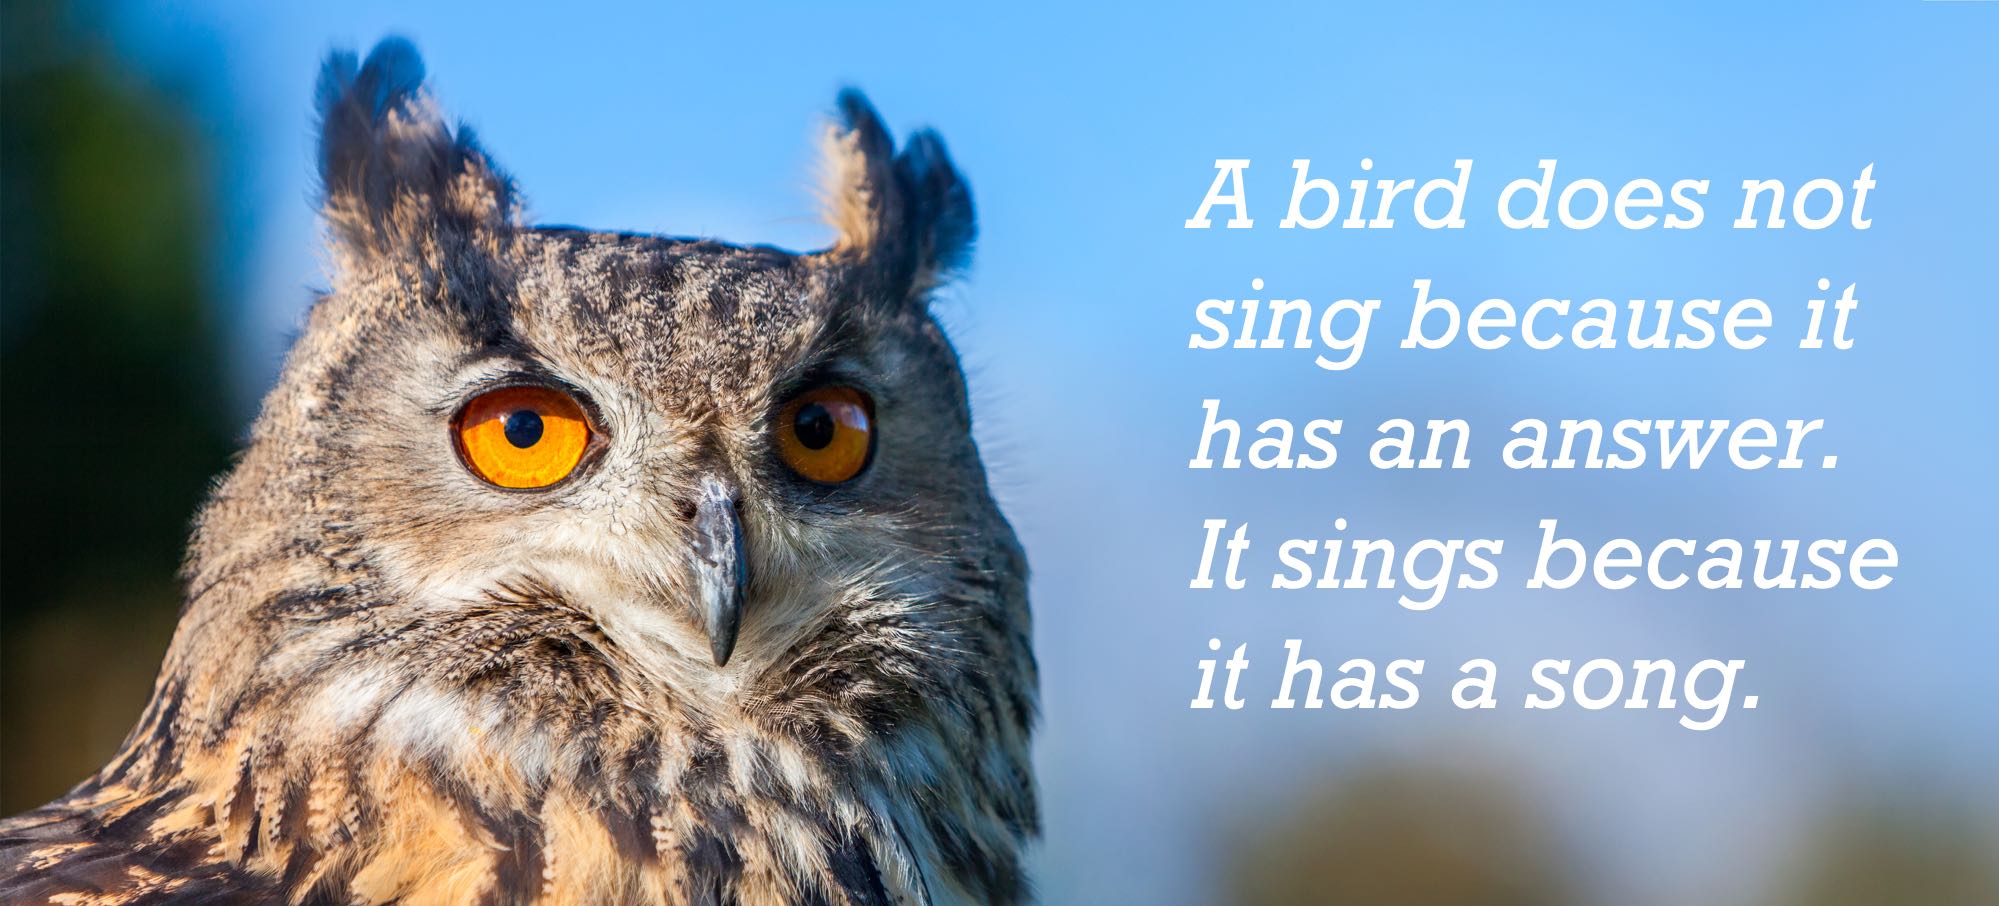 A bird sings a song 2.jpg